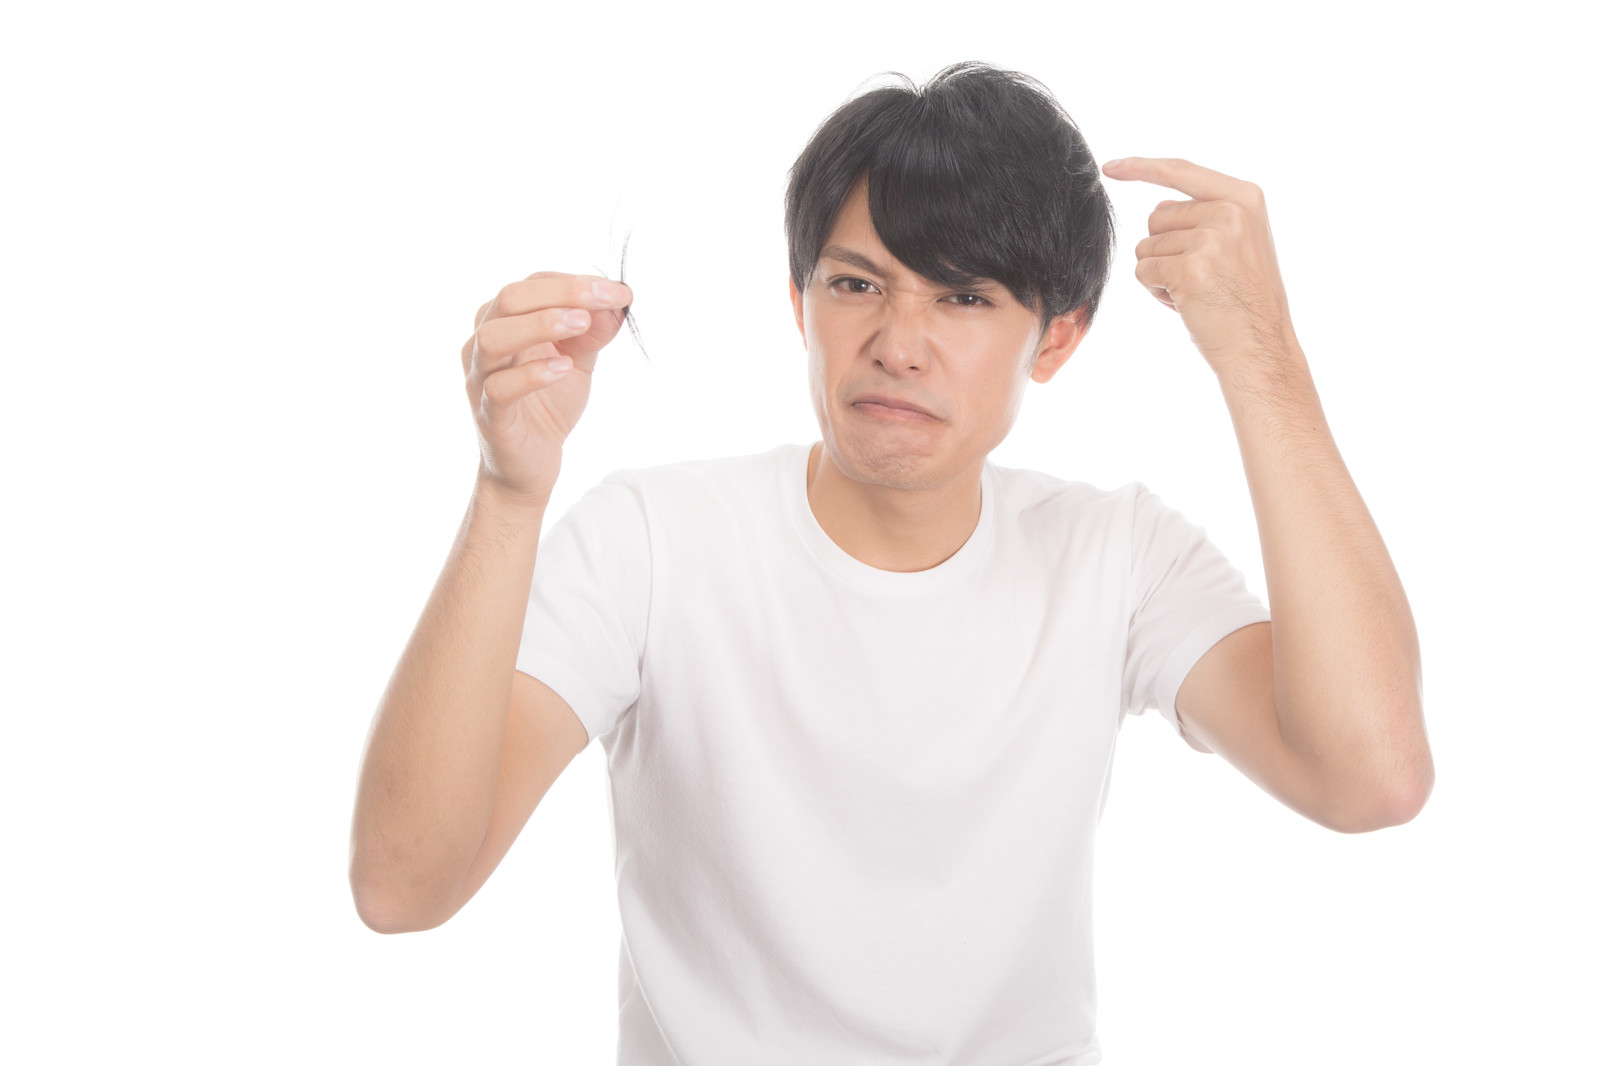 テストステロンの過剰分泌により頭髪が薄くなりヒゲが濃くなった男性